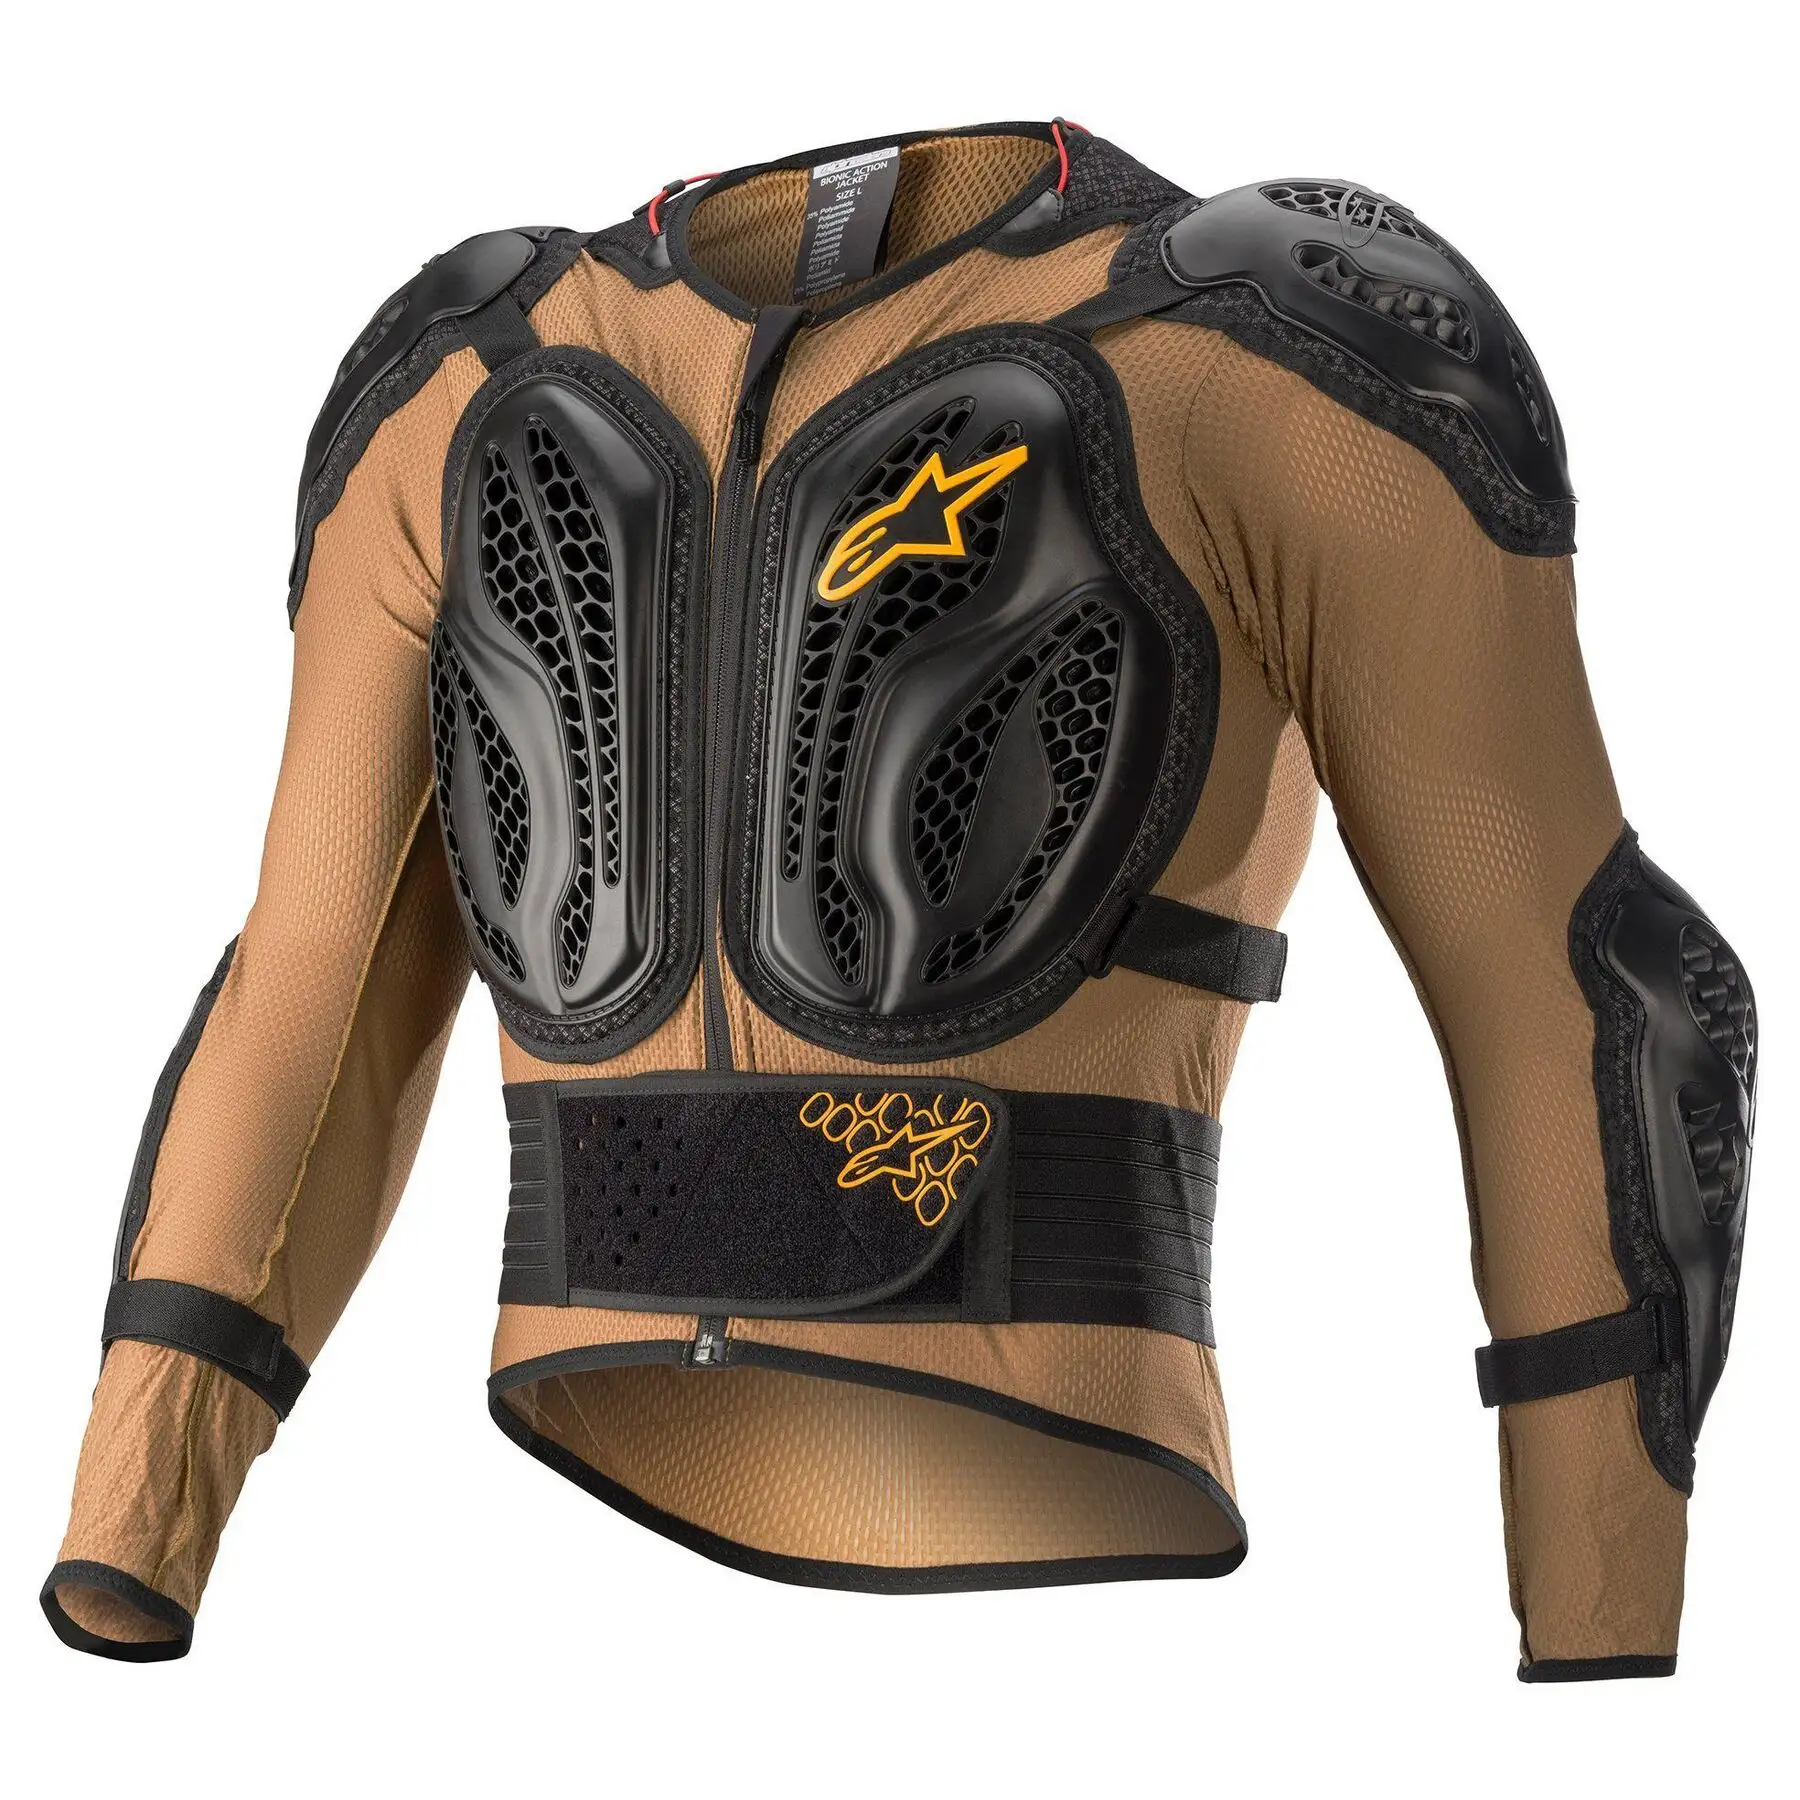 Protezione dell'armatura della colonna vertebrale posteriore giacca abbigliamento moto armatura protettiva petto per uomini e donne